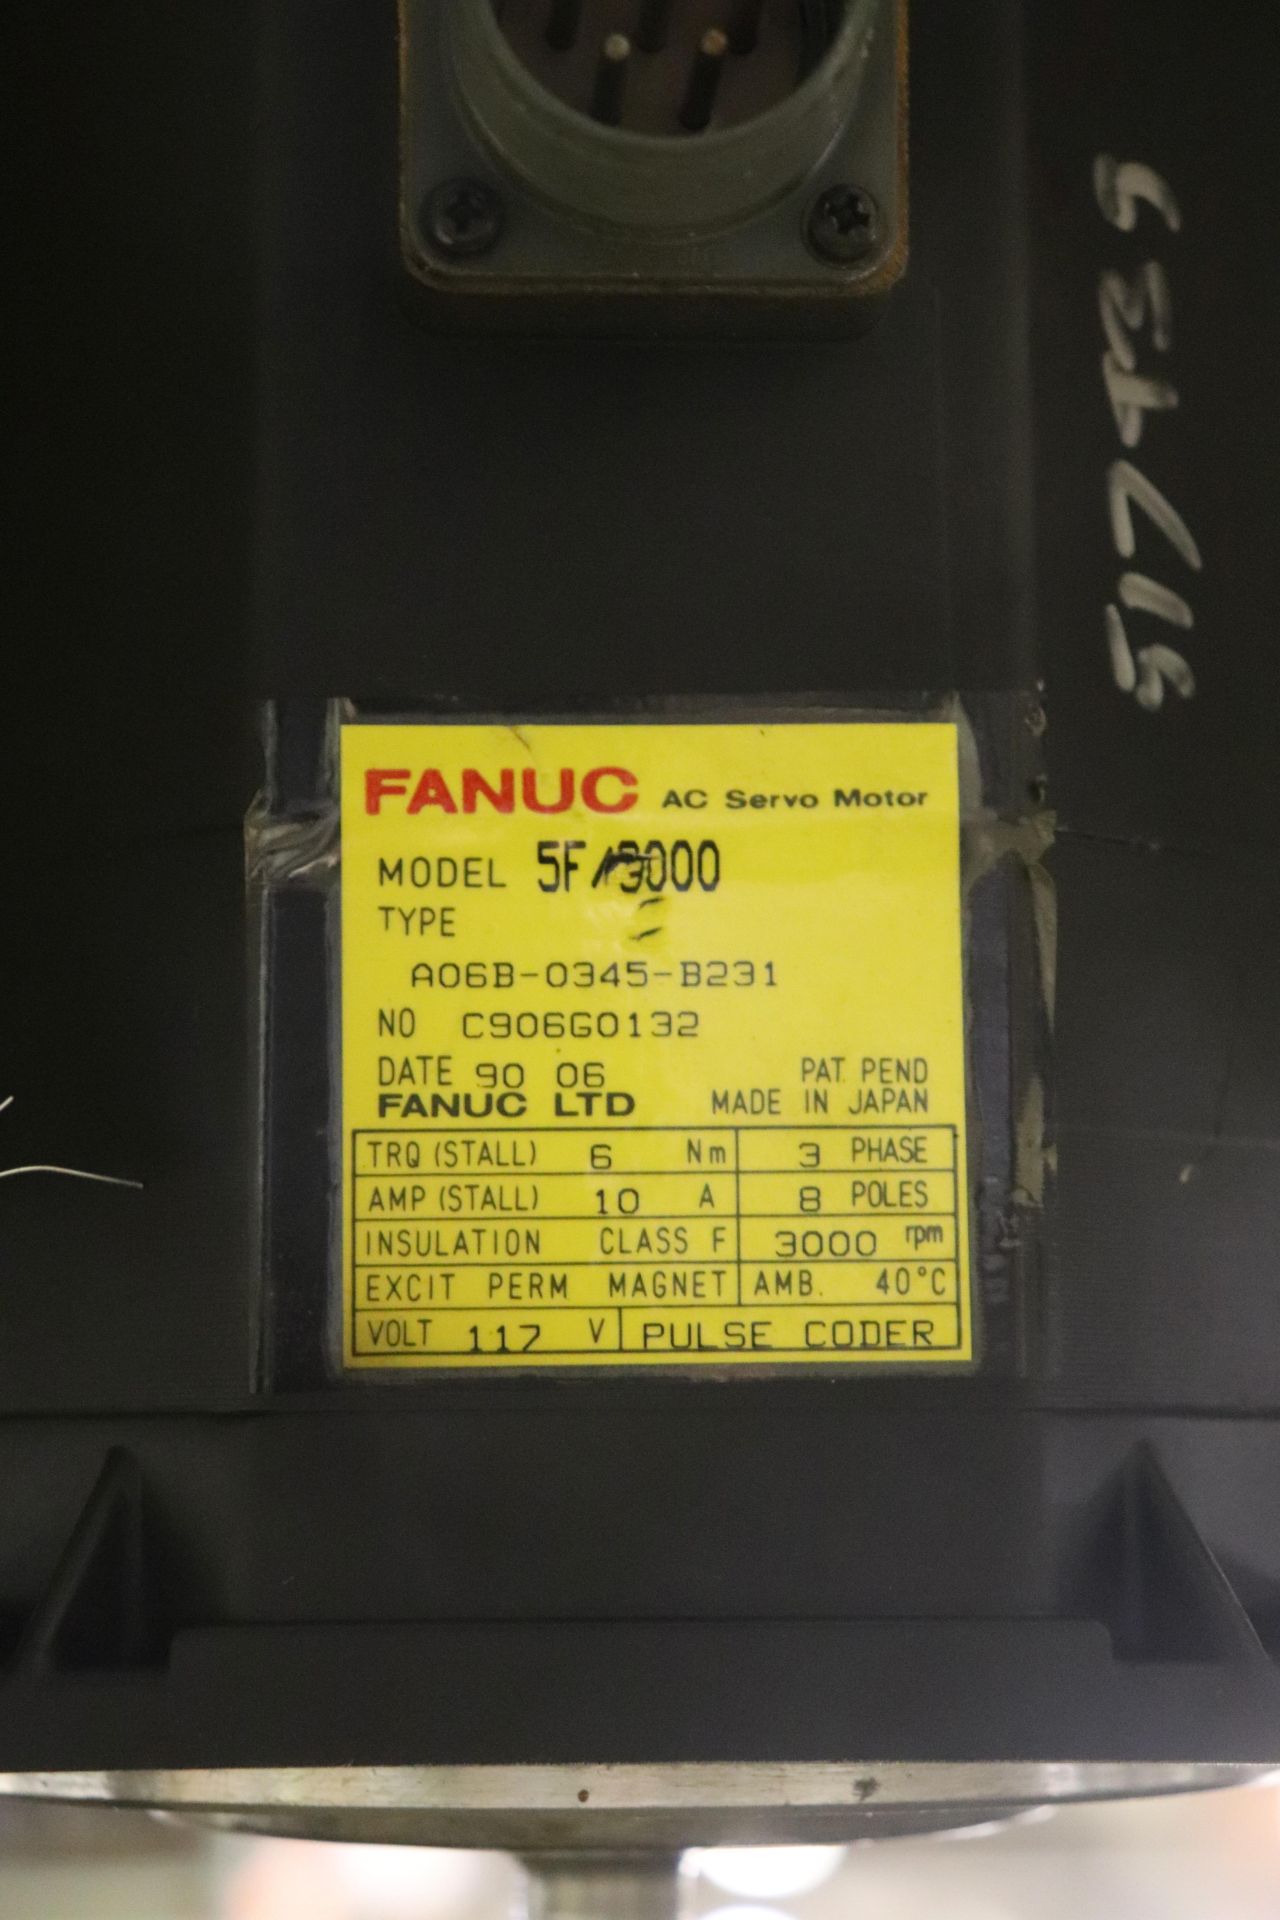 Fanuc AC Servo motor, model 5F/3000 - Image 2 of 2